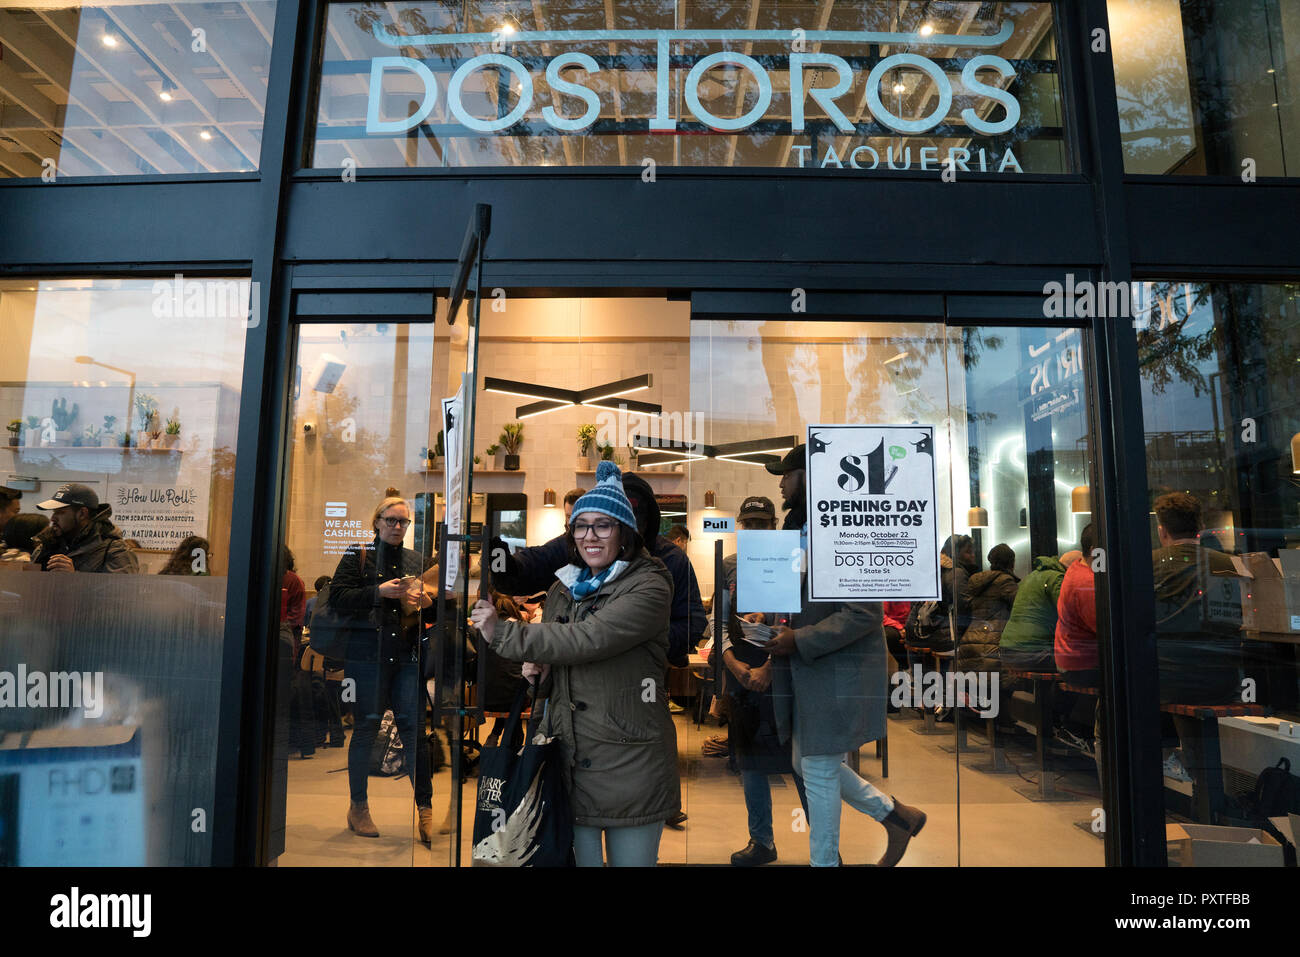 Während der Eröffnung eines Dos-Toros Restaurant in Lower Manhattan, Gönner aufgereiht für Burritos und anderen entreés, für $ 1 angeboten wurden. Stockfoto